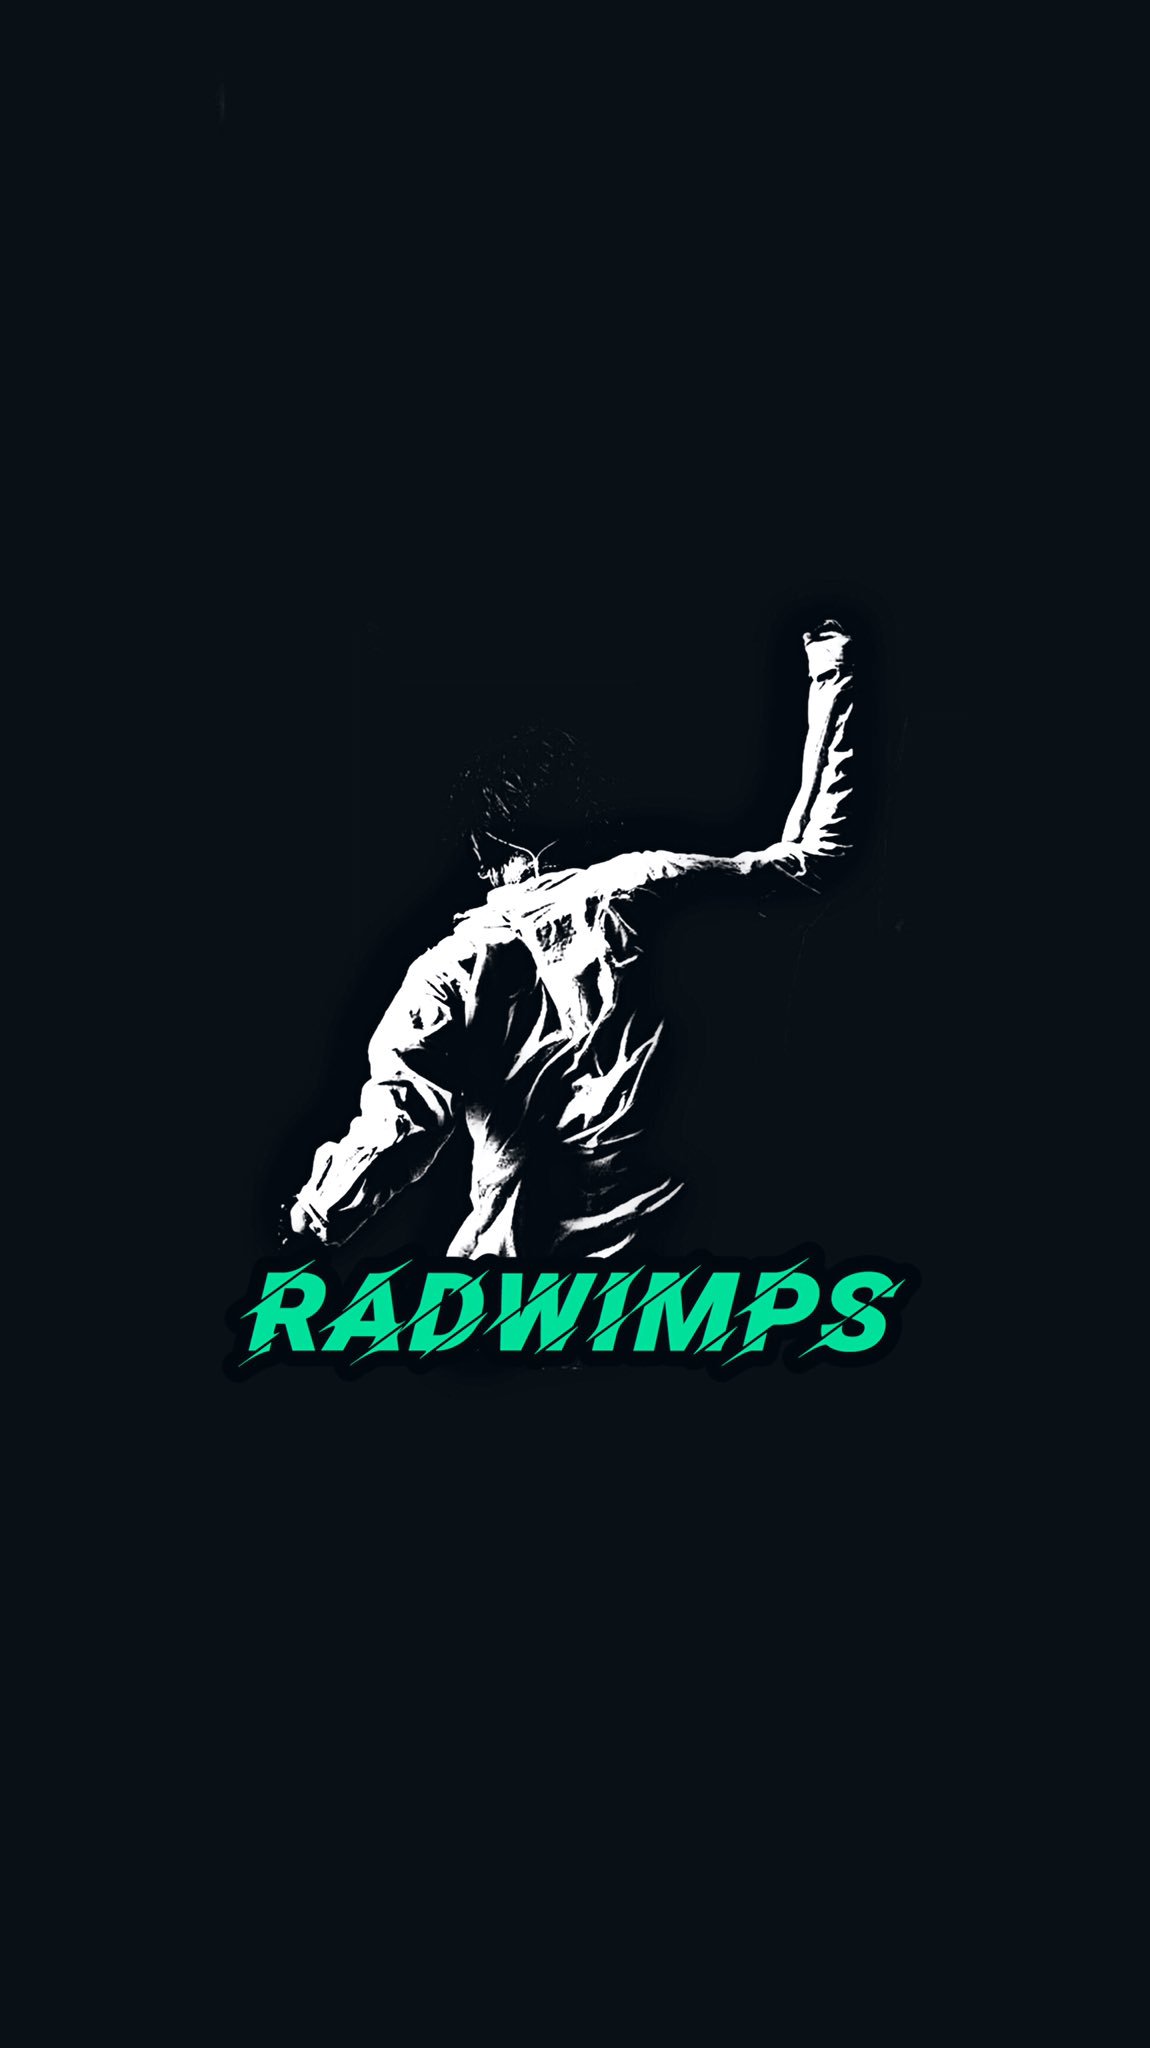 やどかり Rad歌詞画制作 僕のお気に入りのフォントで Radwimps の壁紙を作ってみました 良かったら使って下さい Radwimps 壁紙 ロック画面 T Co Vf4tvidgjc Twitter